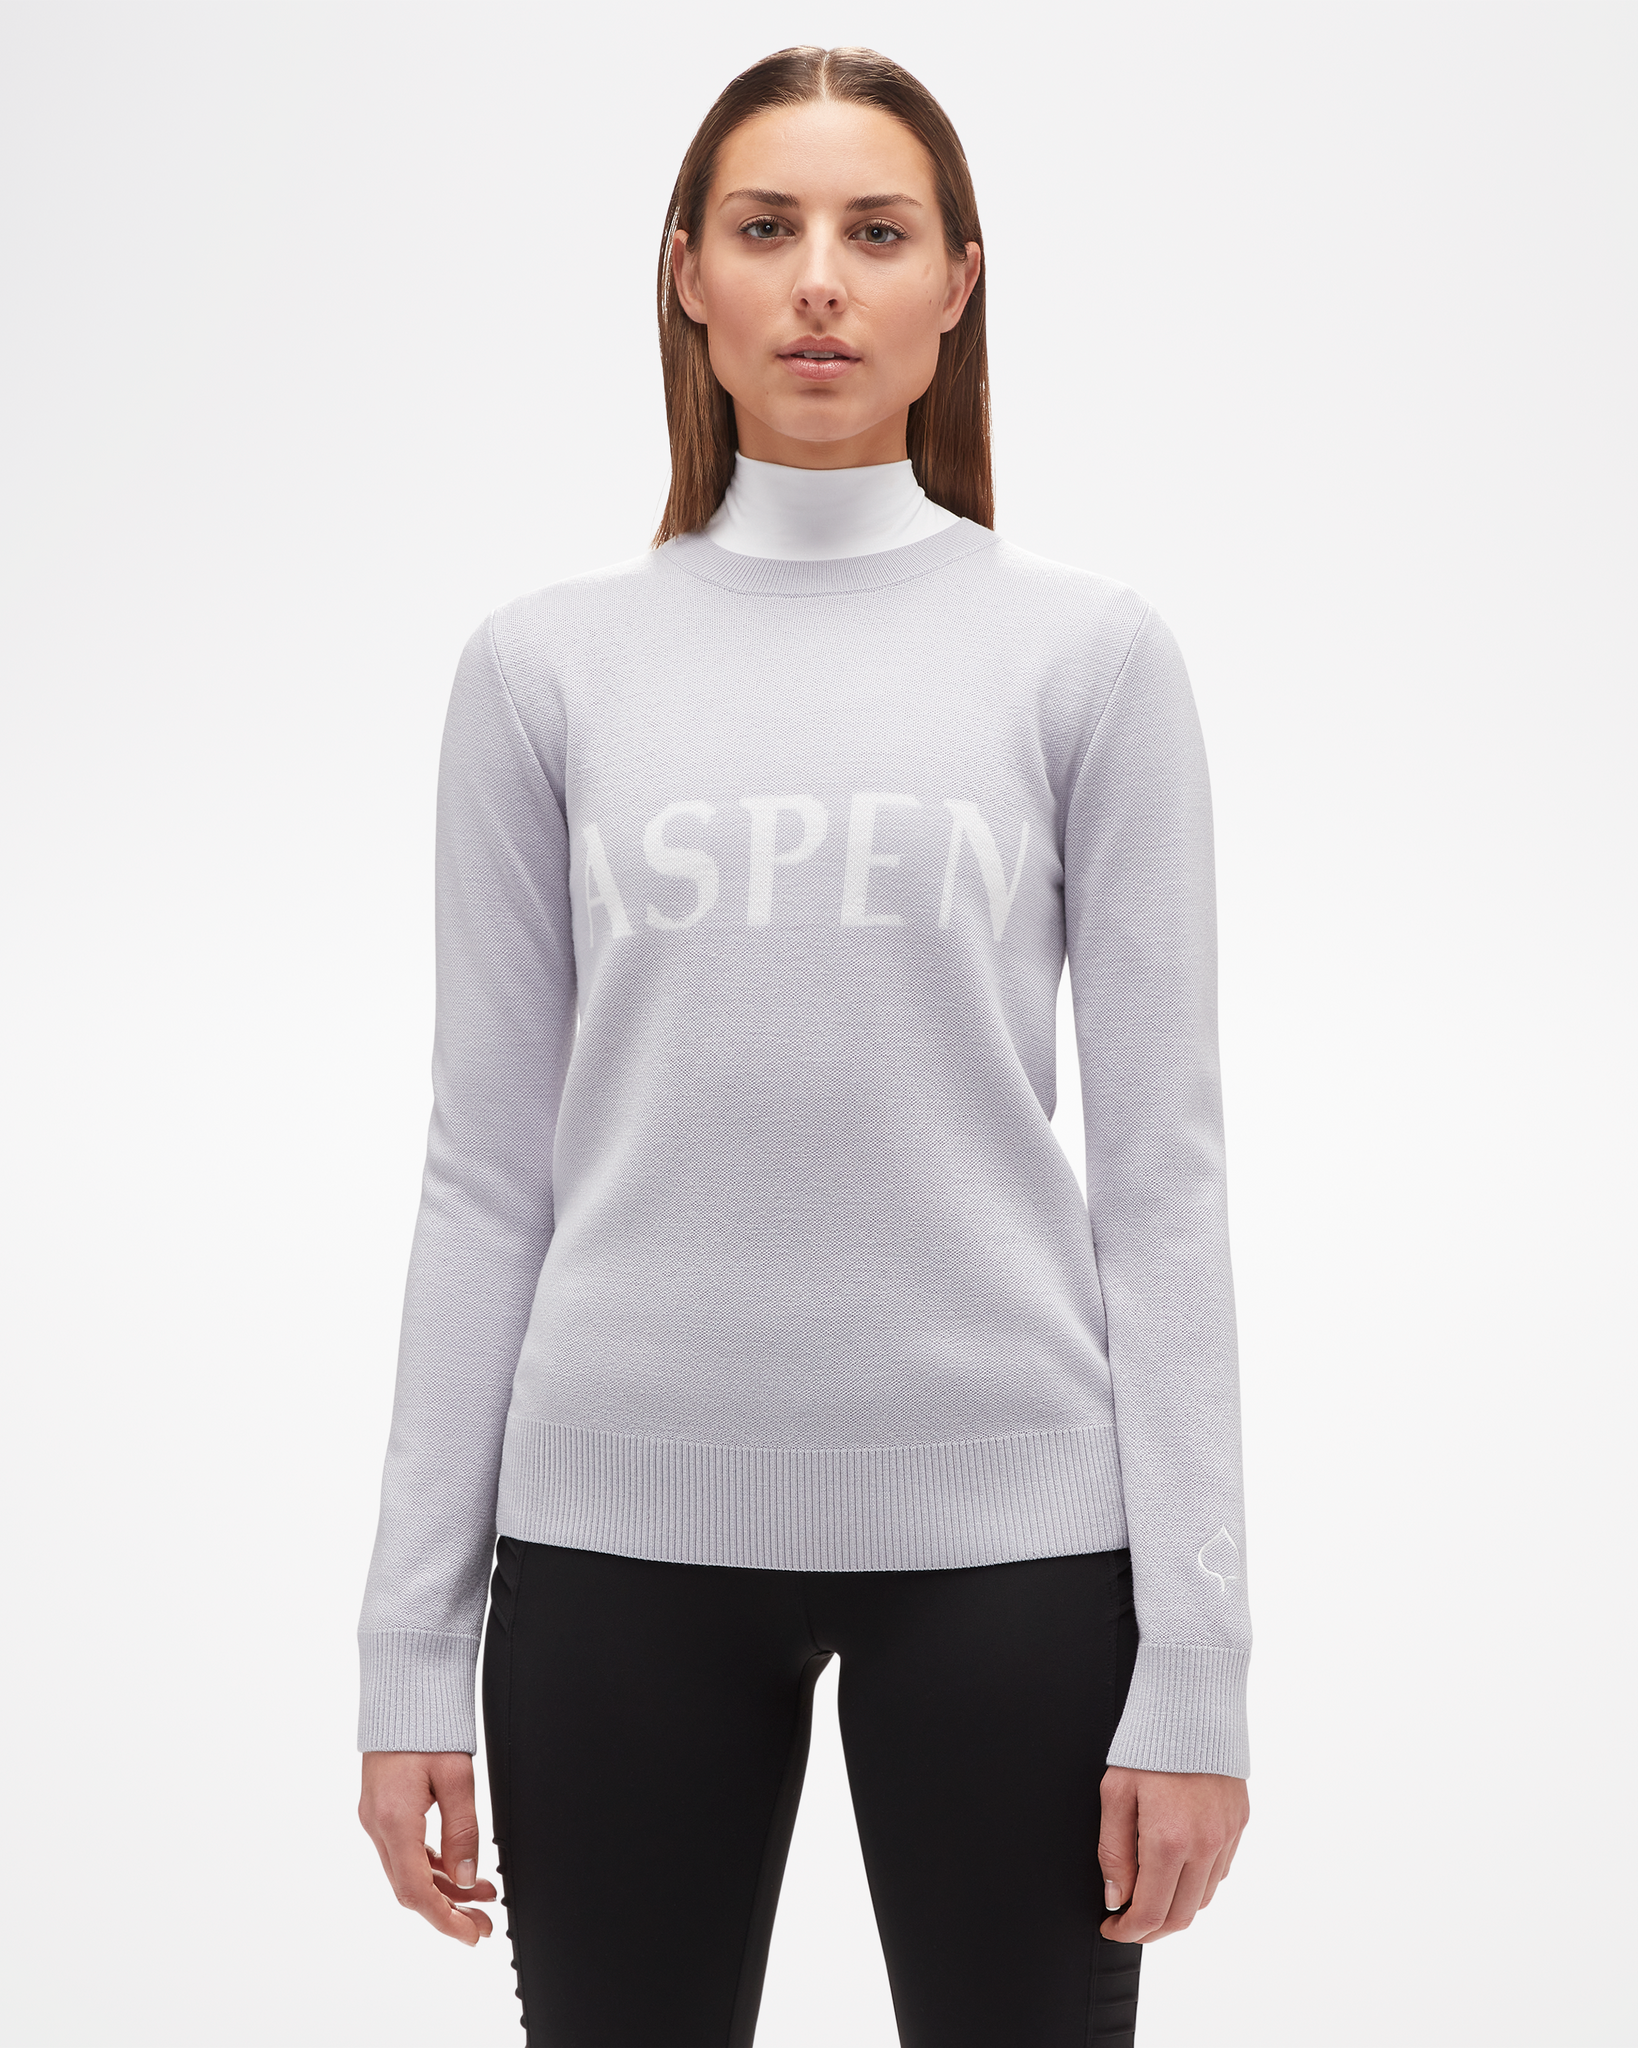 Women's Signature Aspen Sweater Grey